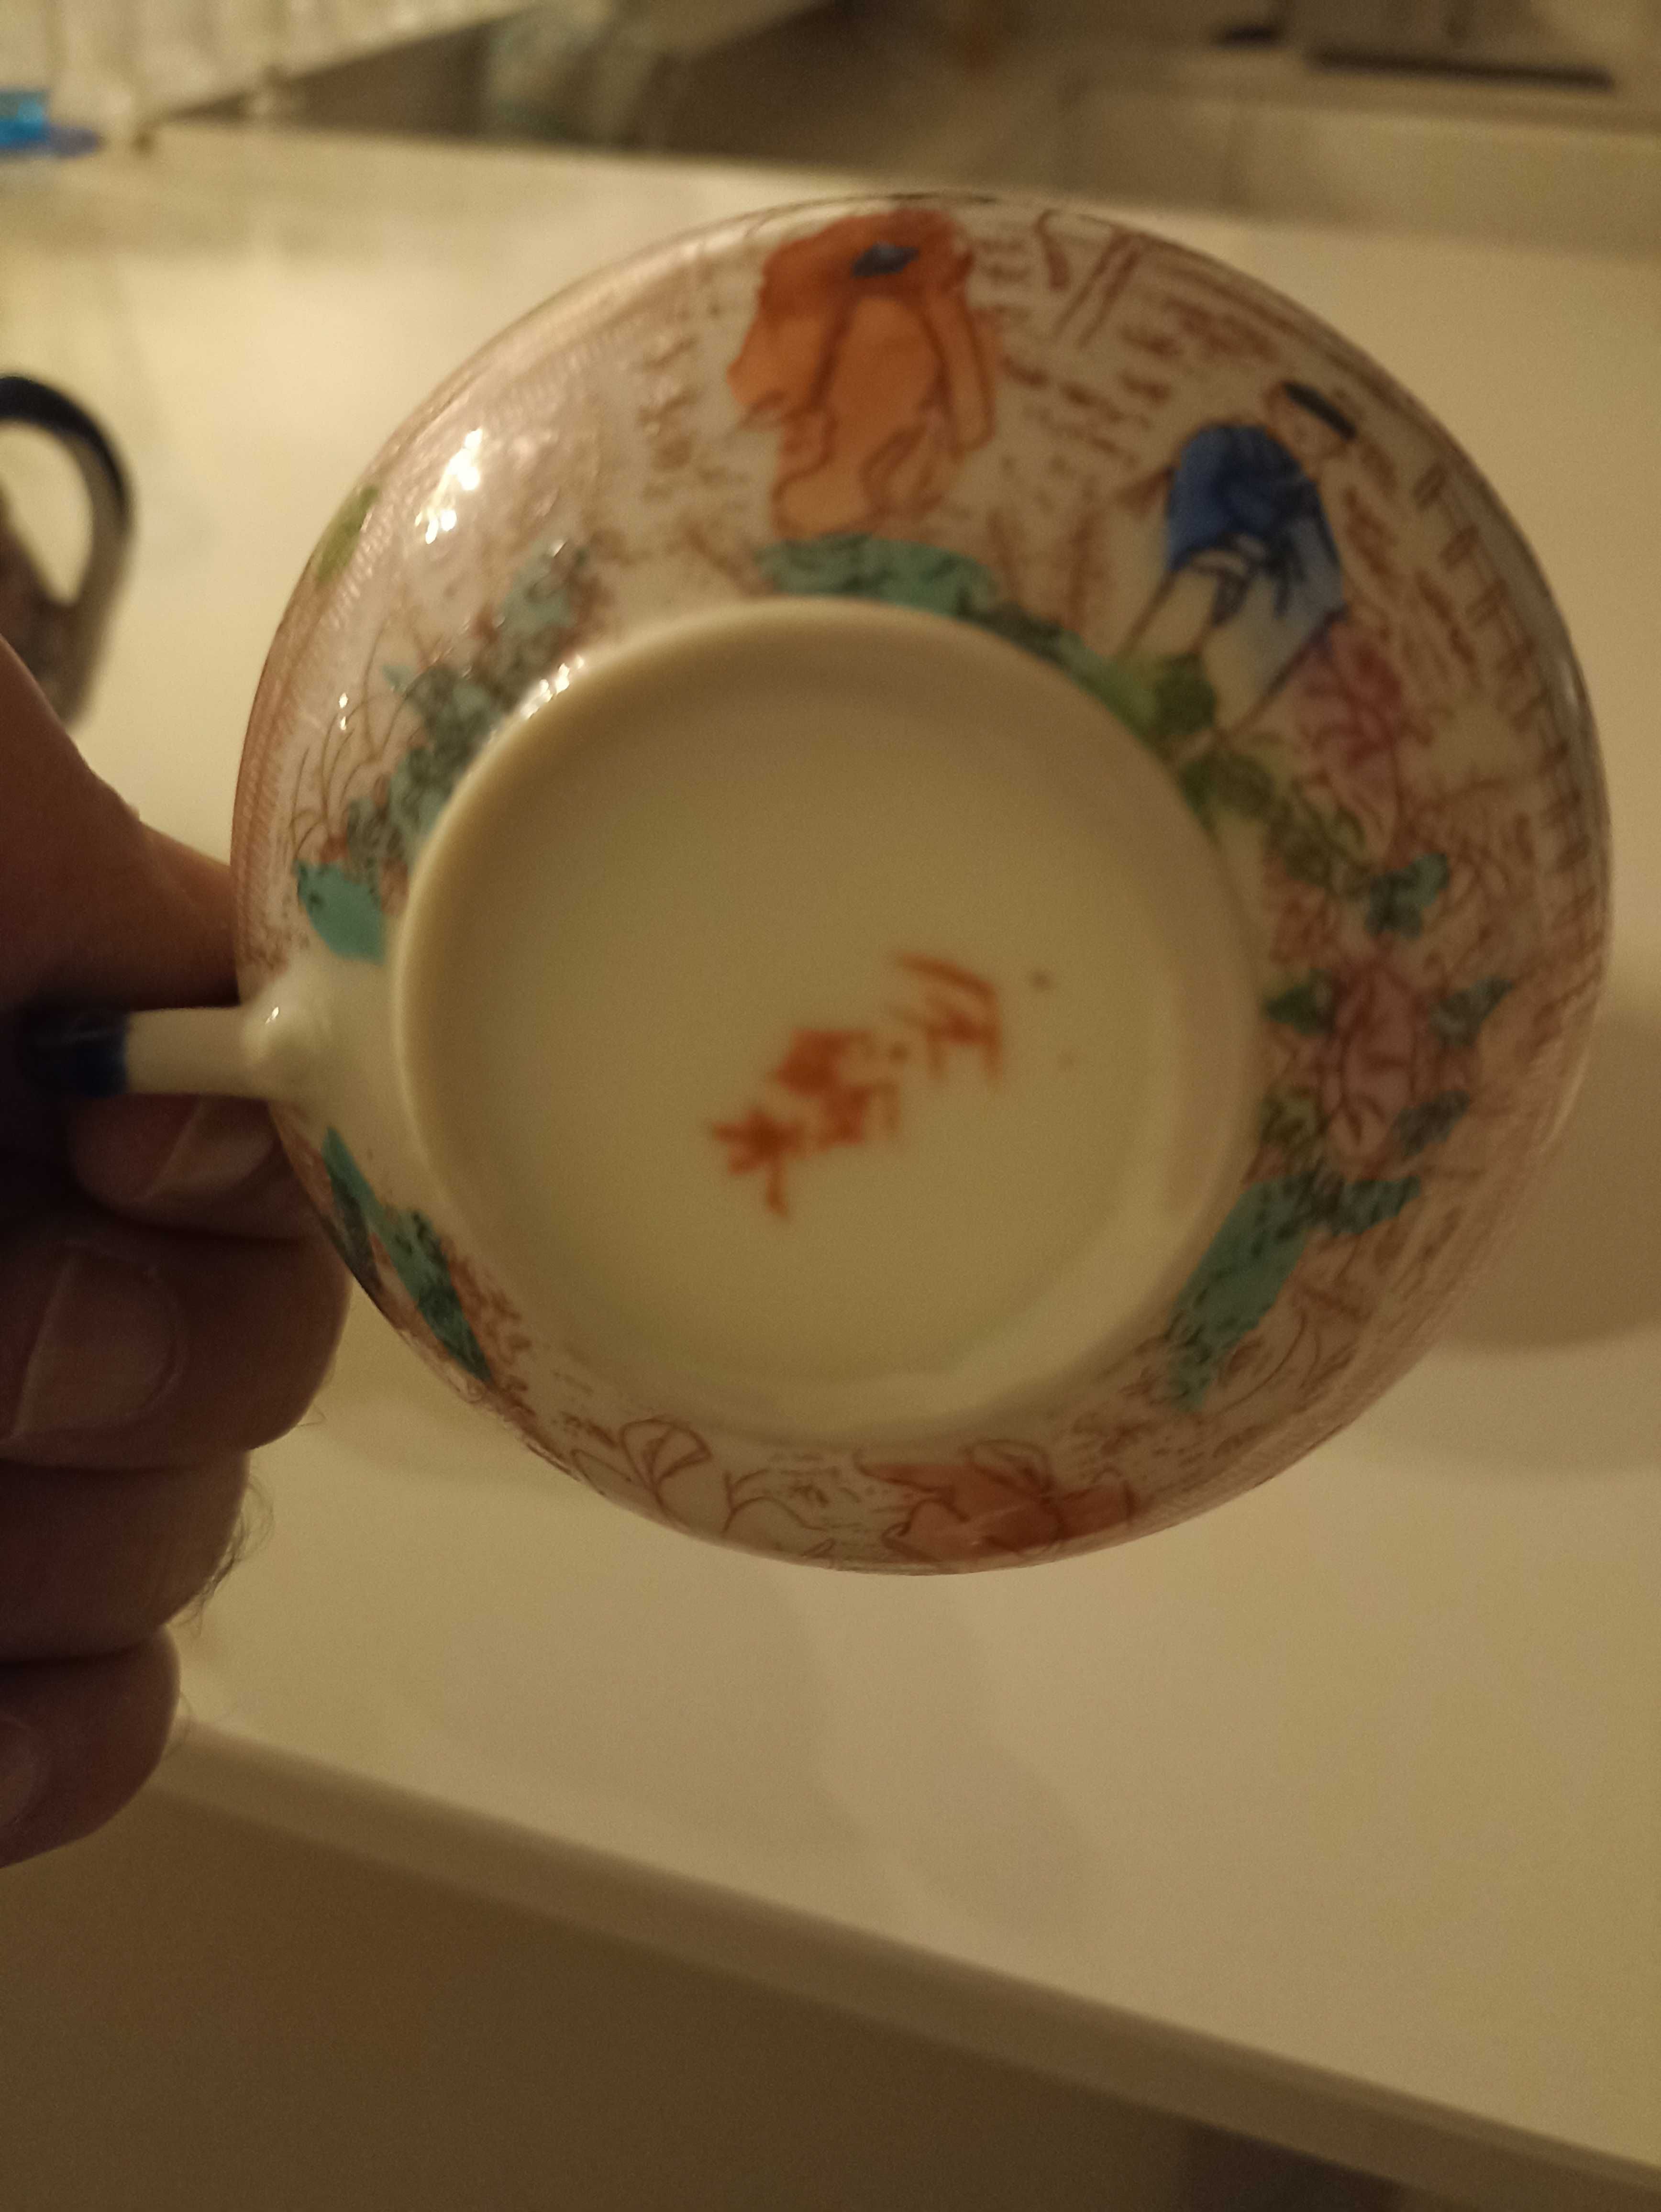 Bules, Chavenas pires porcelana chinesa de caulim translúcida